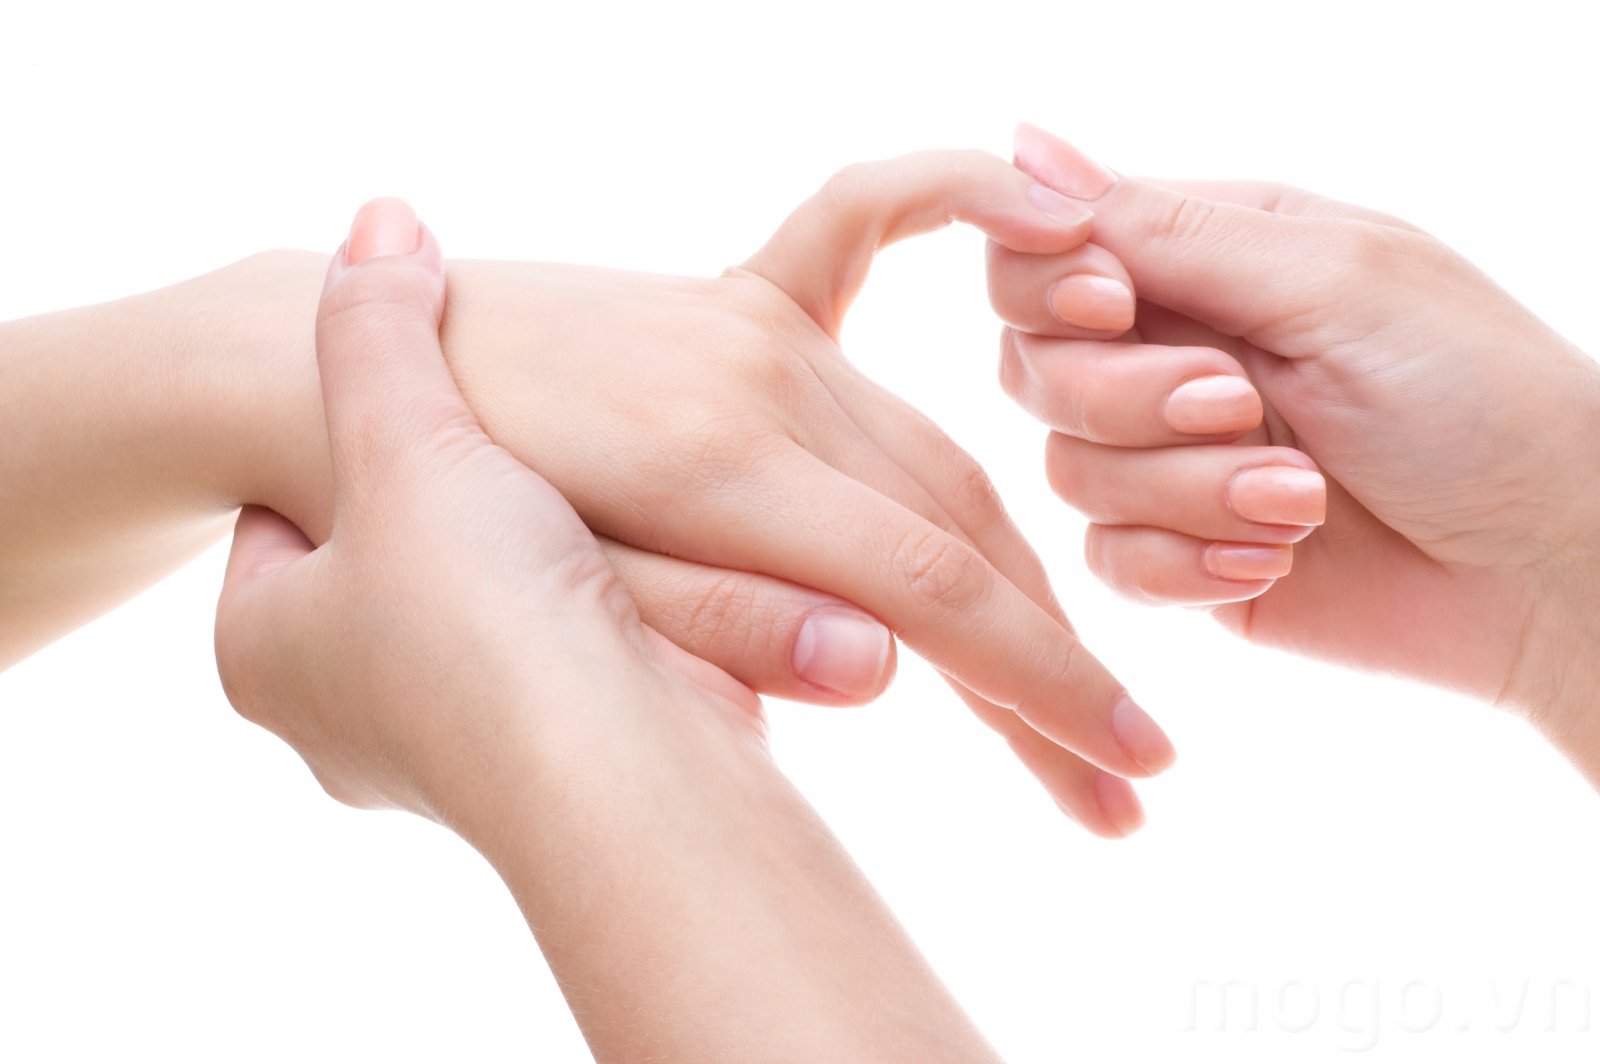 Chấn thương ngón út gây tím tái, không duỗi thẳng ngón tay có sao không?